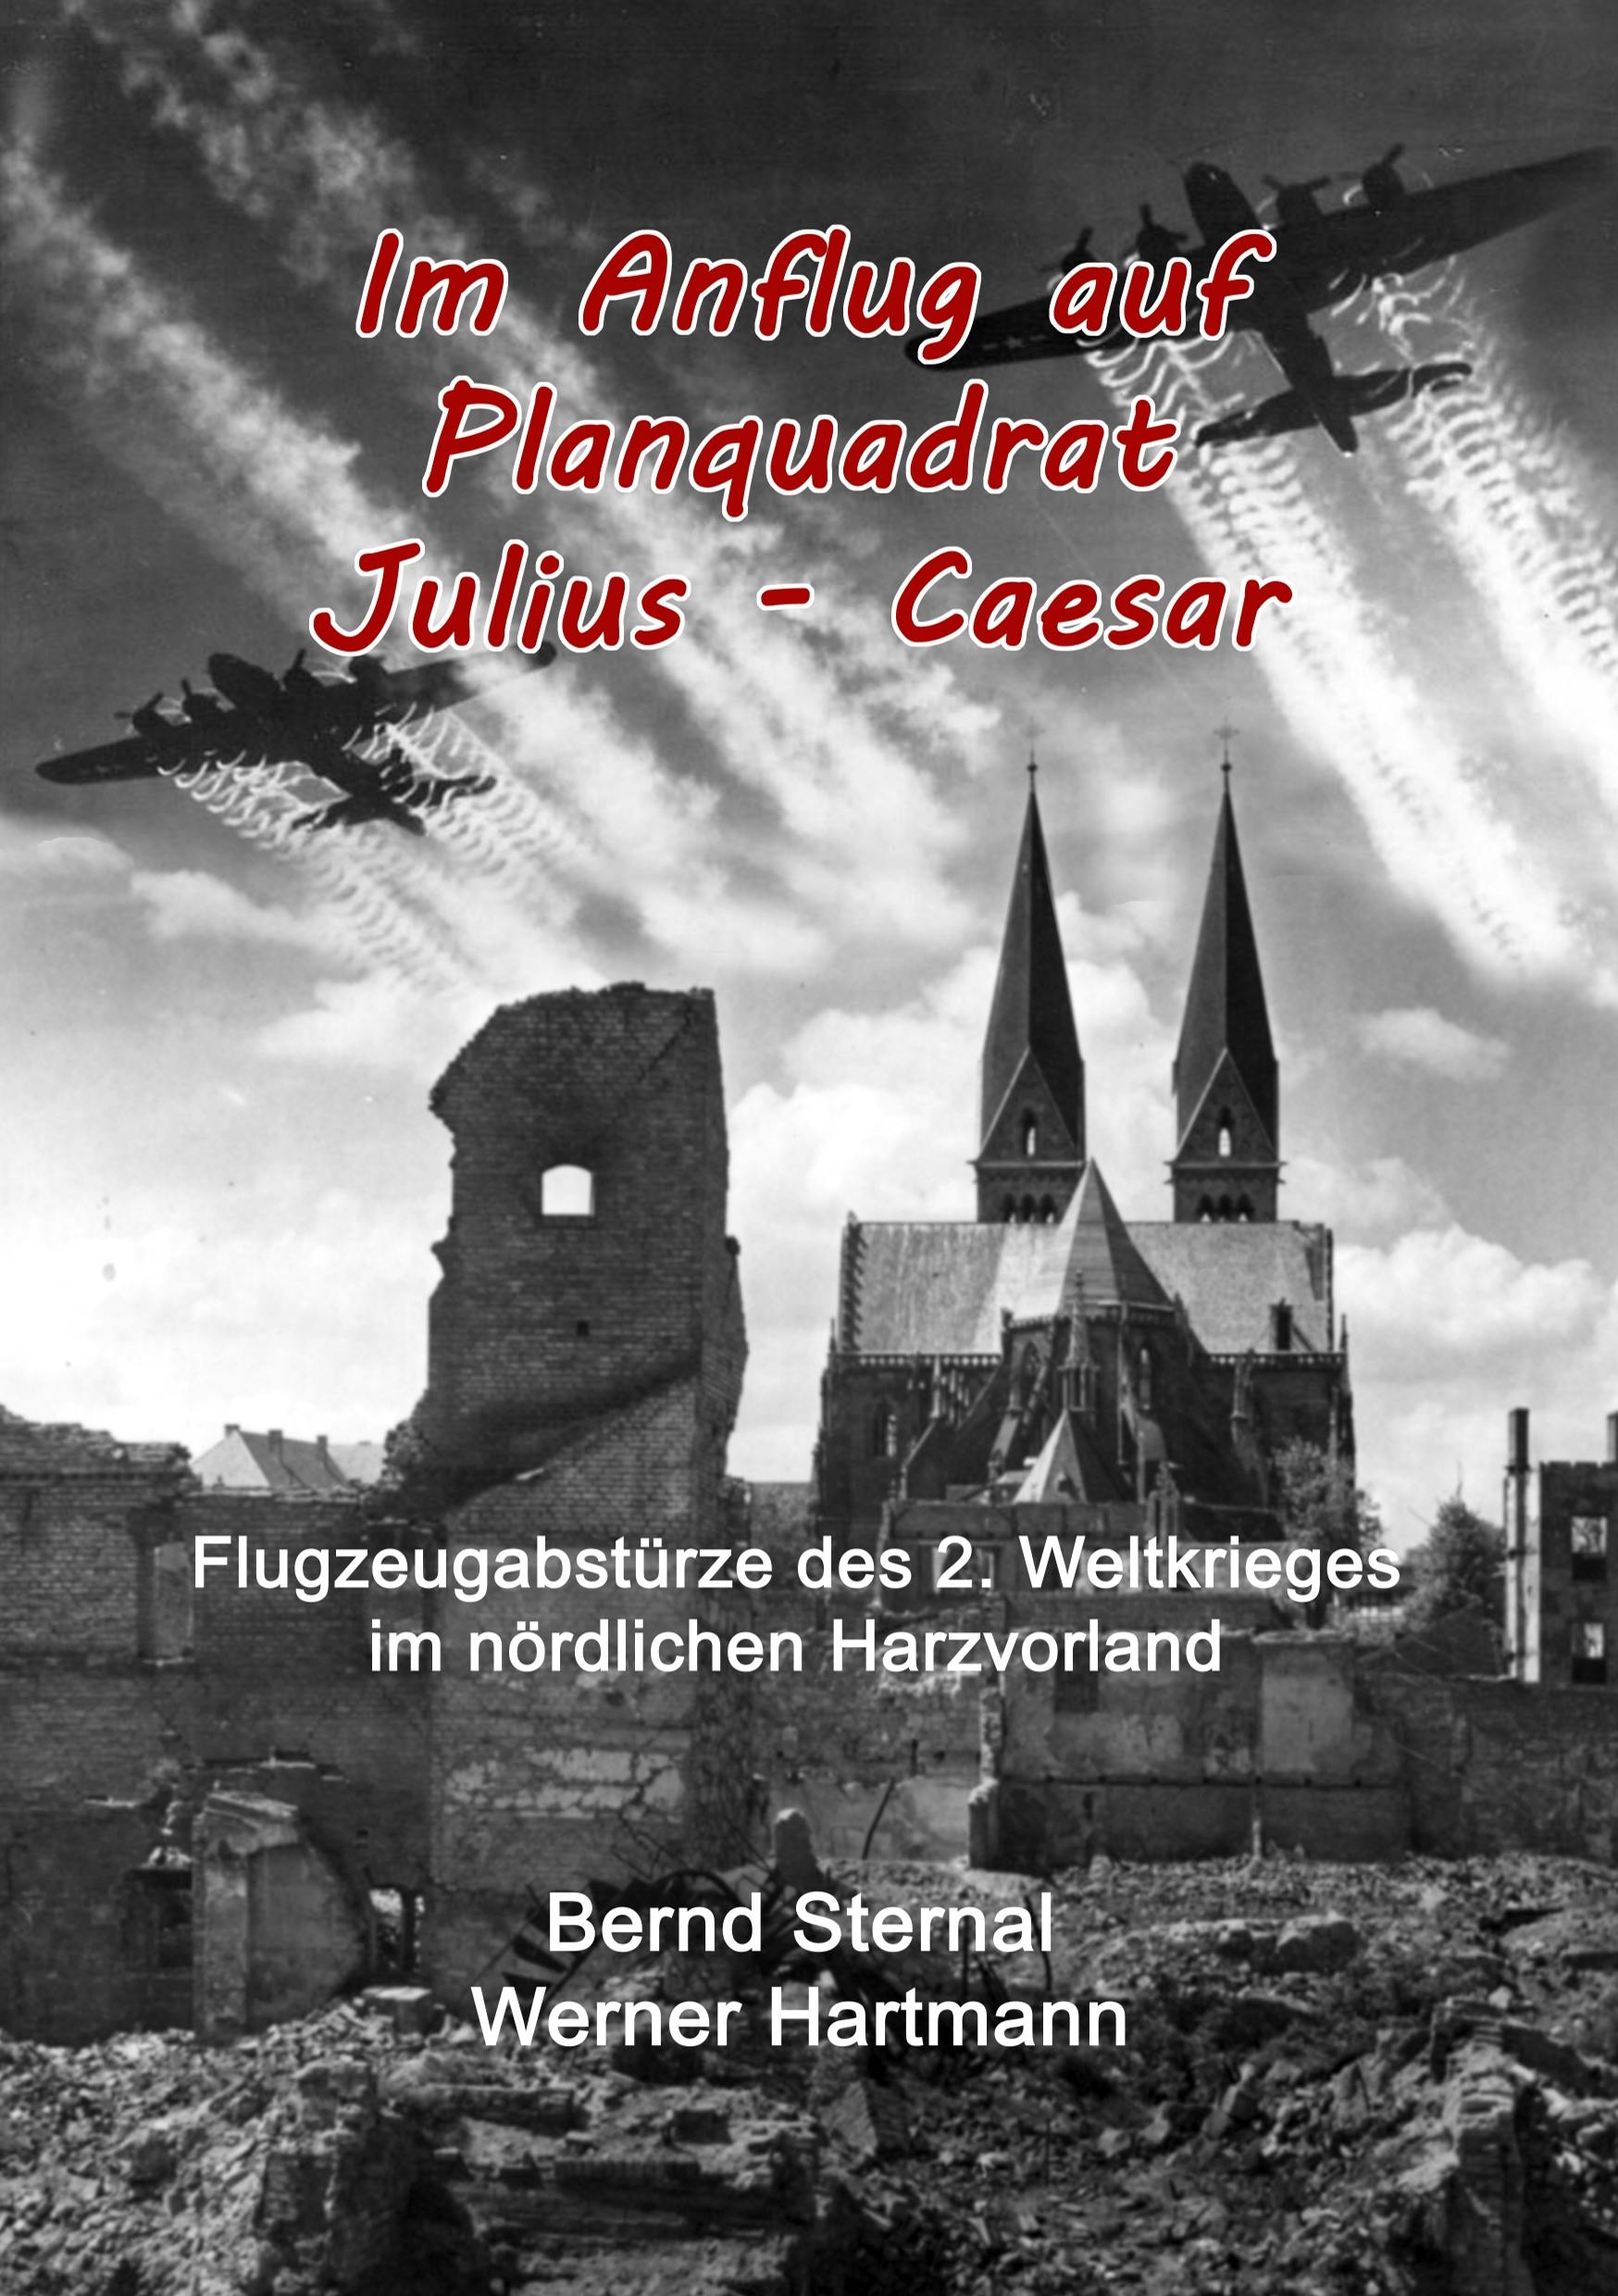 Im Anflug auf Planquadrat Julius - Caesar - Bernd Sternal, Werner Hartmann